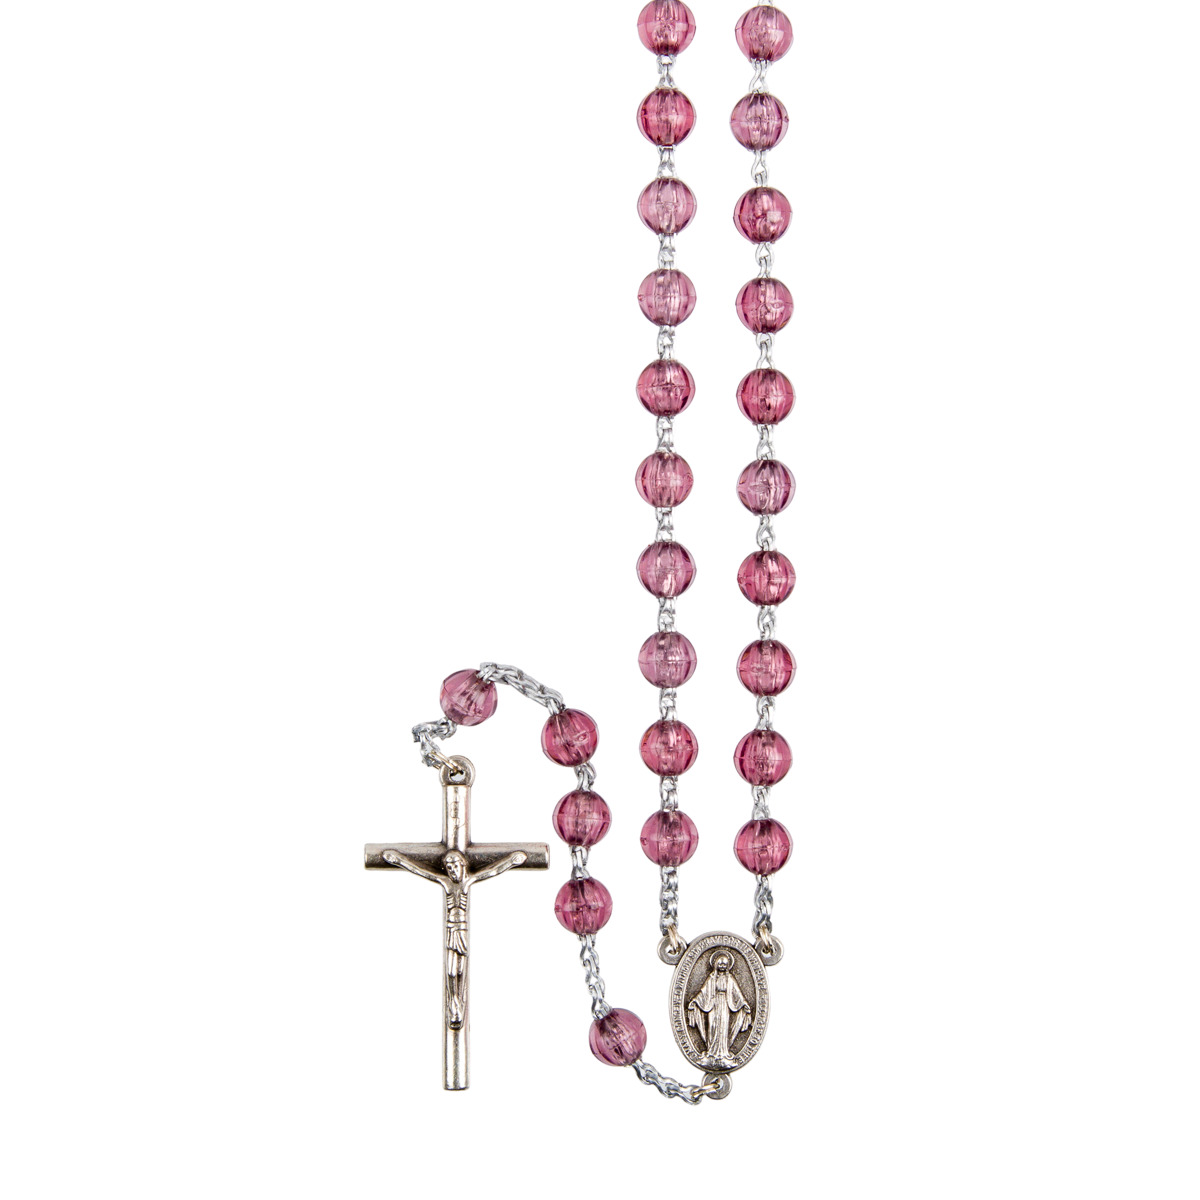 Chapelet sur chaine indécrochable couleur argentée grains en plastique ronds Ø 7 mm, longueur au cœur 31 cm, croix avec Christ.